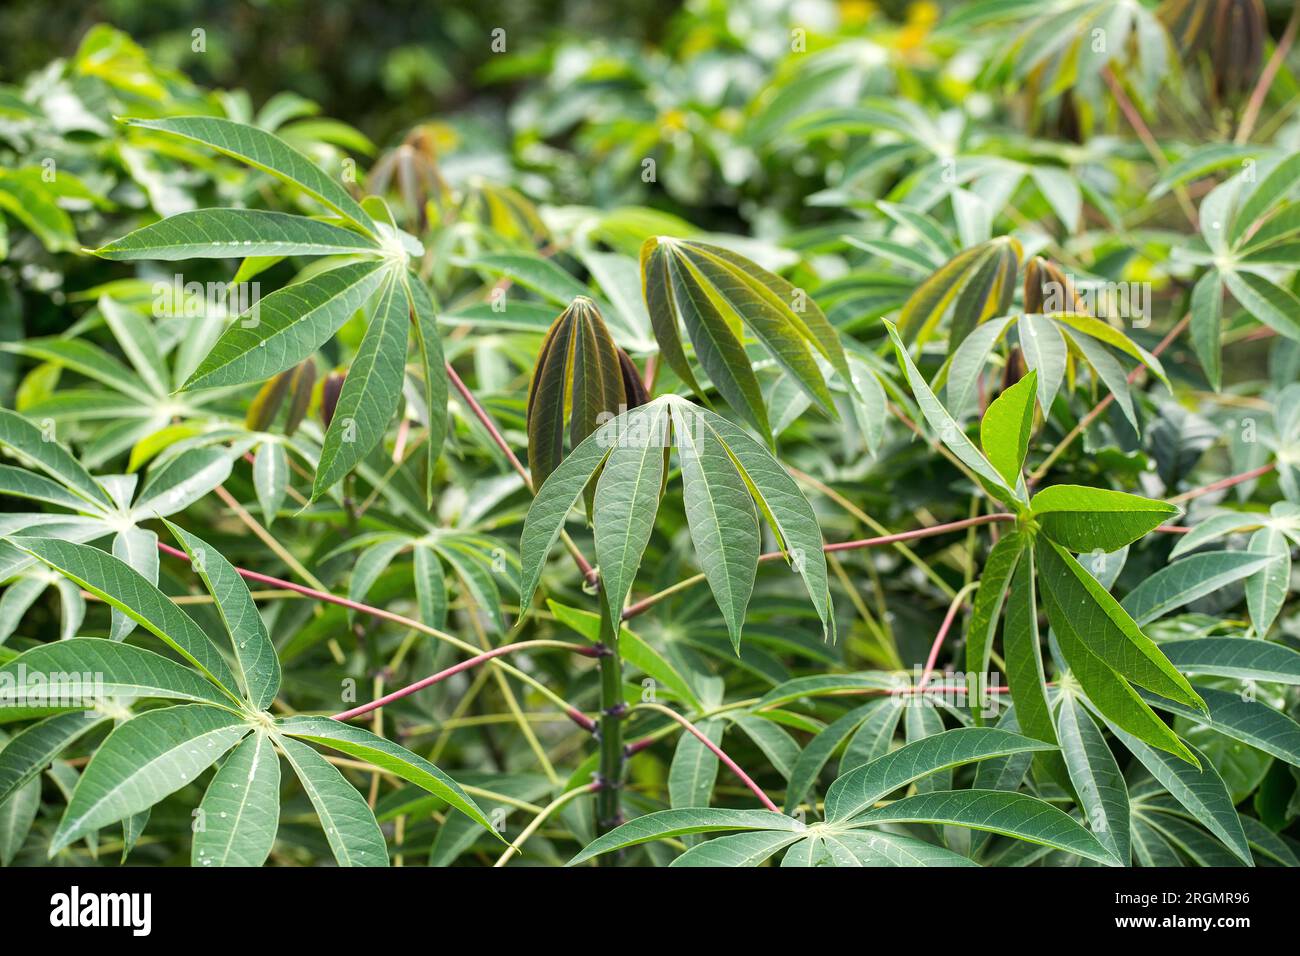 Plantation de manioc, culture du tapioca dans le champ - Manihot esculenta Banque D'Images